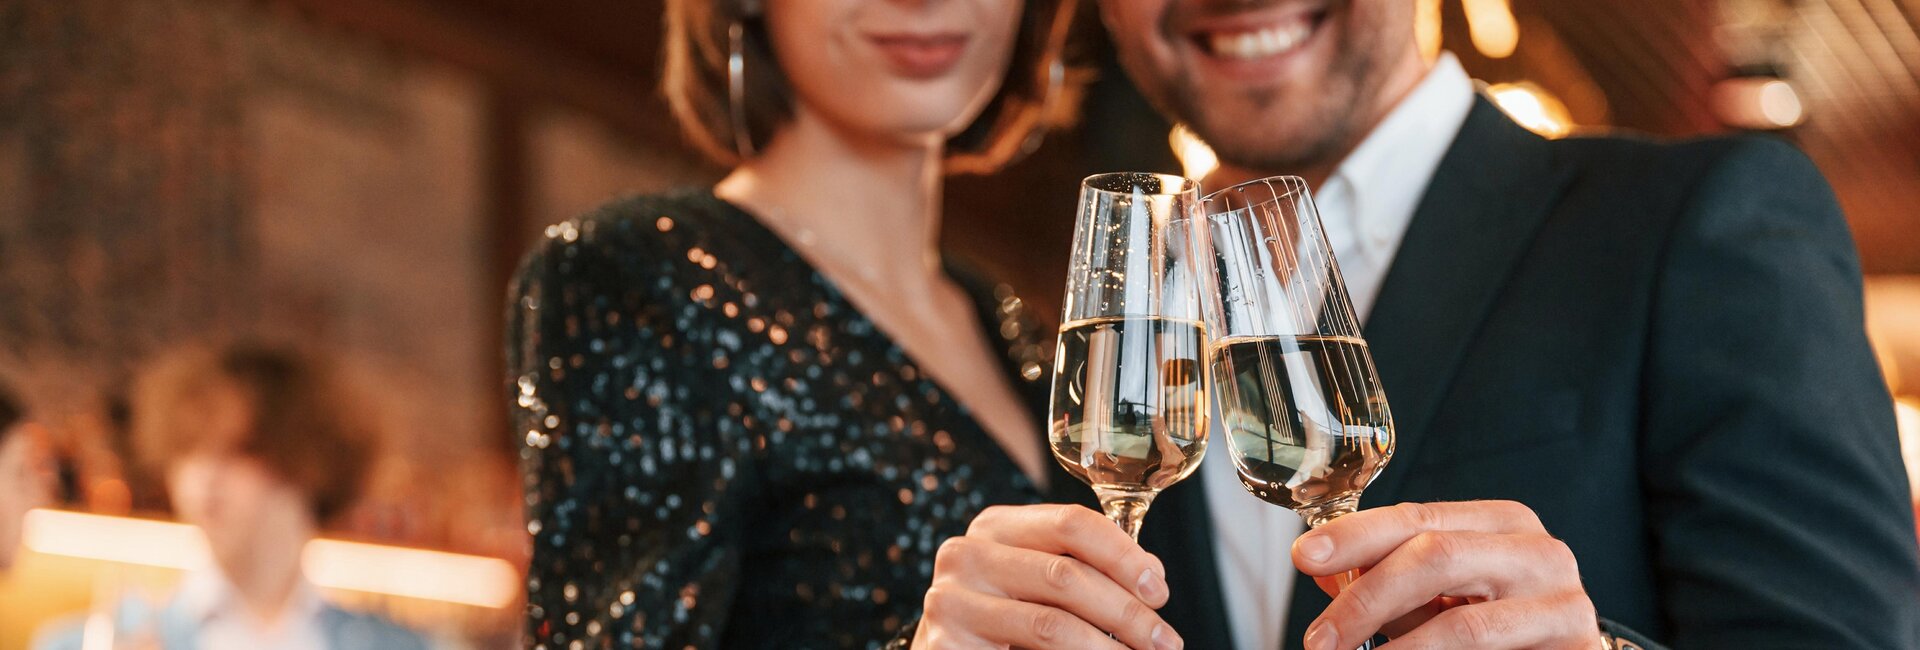 Elegantes Paar mit zwei Gläsern Champagner | © Shutterstock